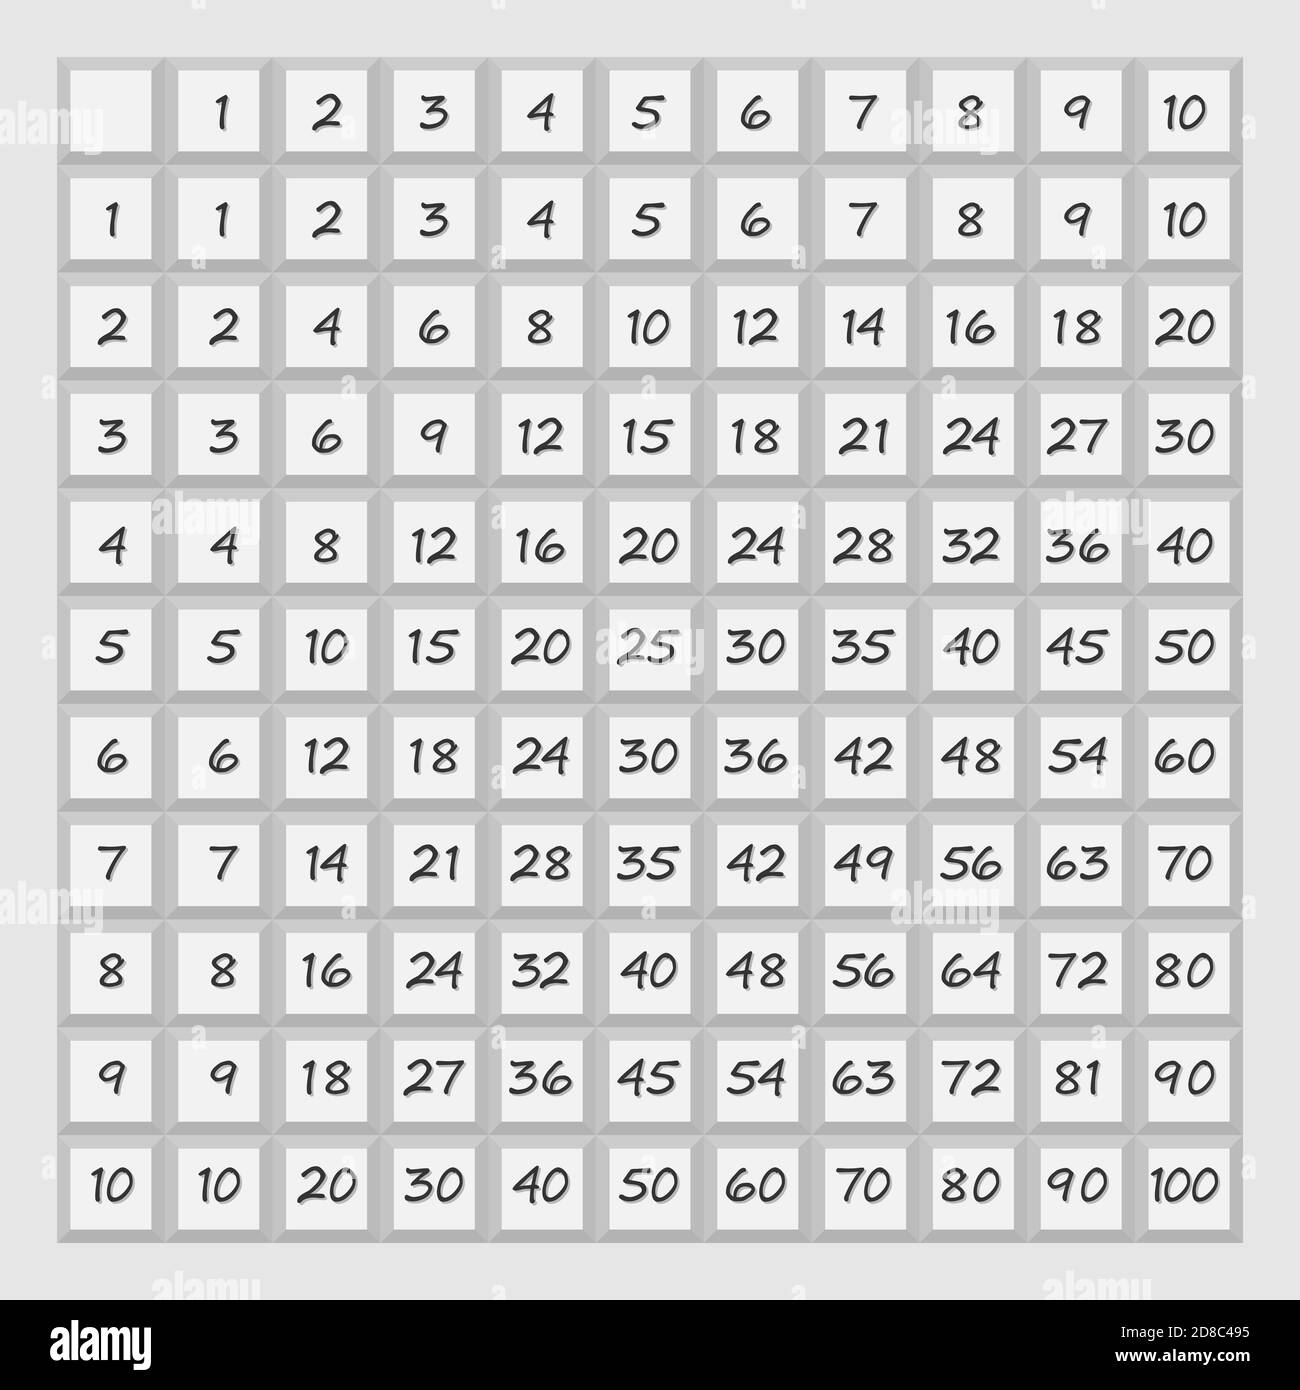 Multiplication table hi